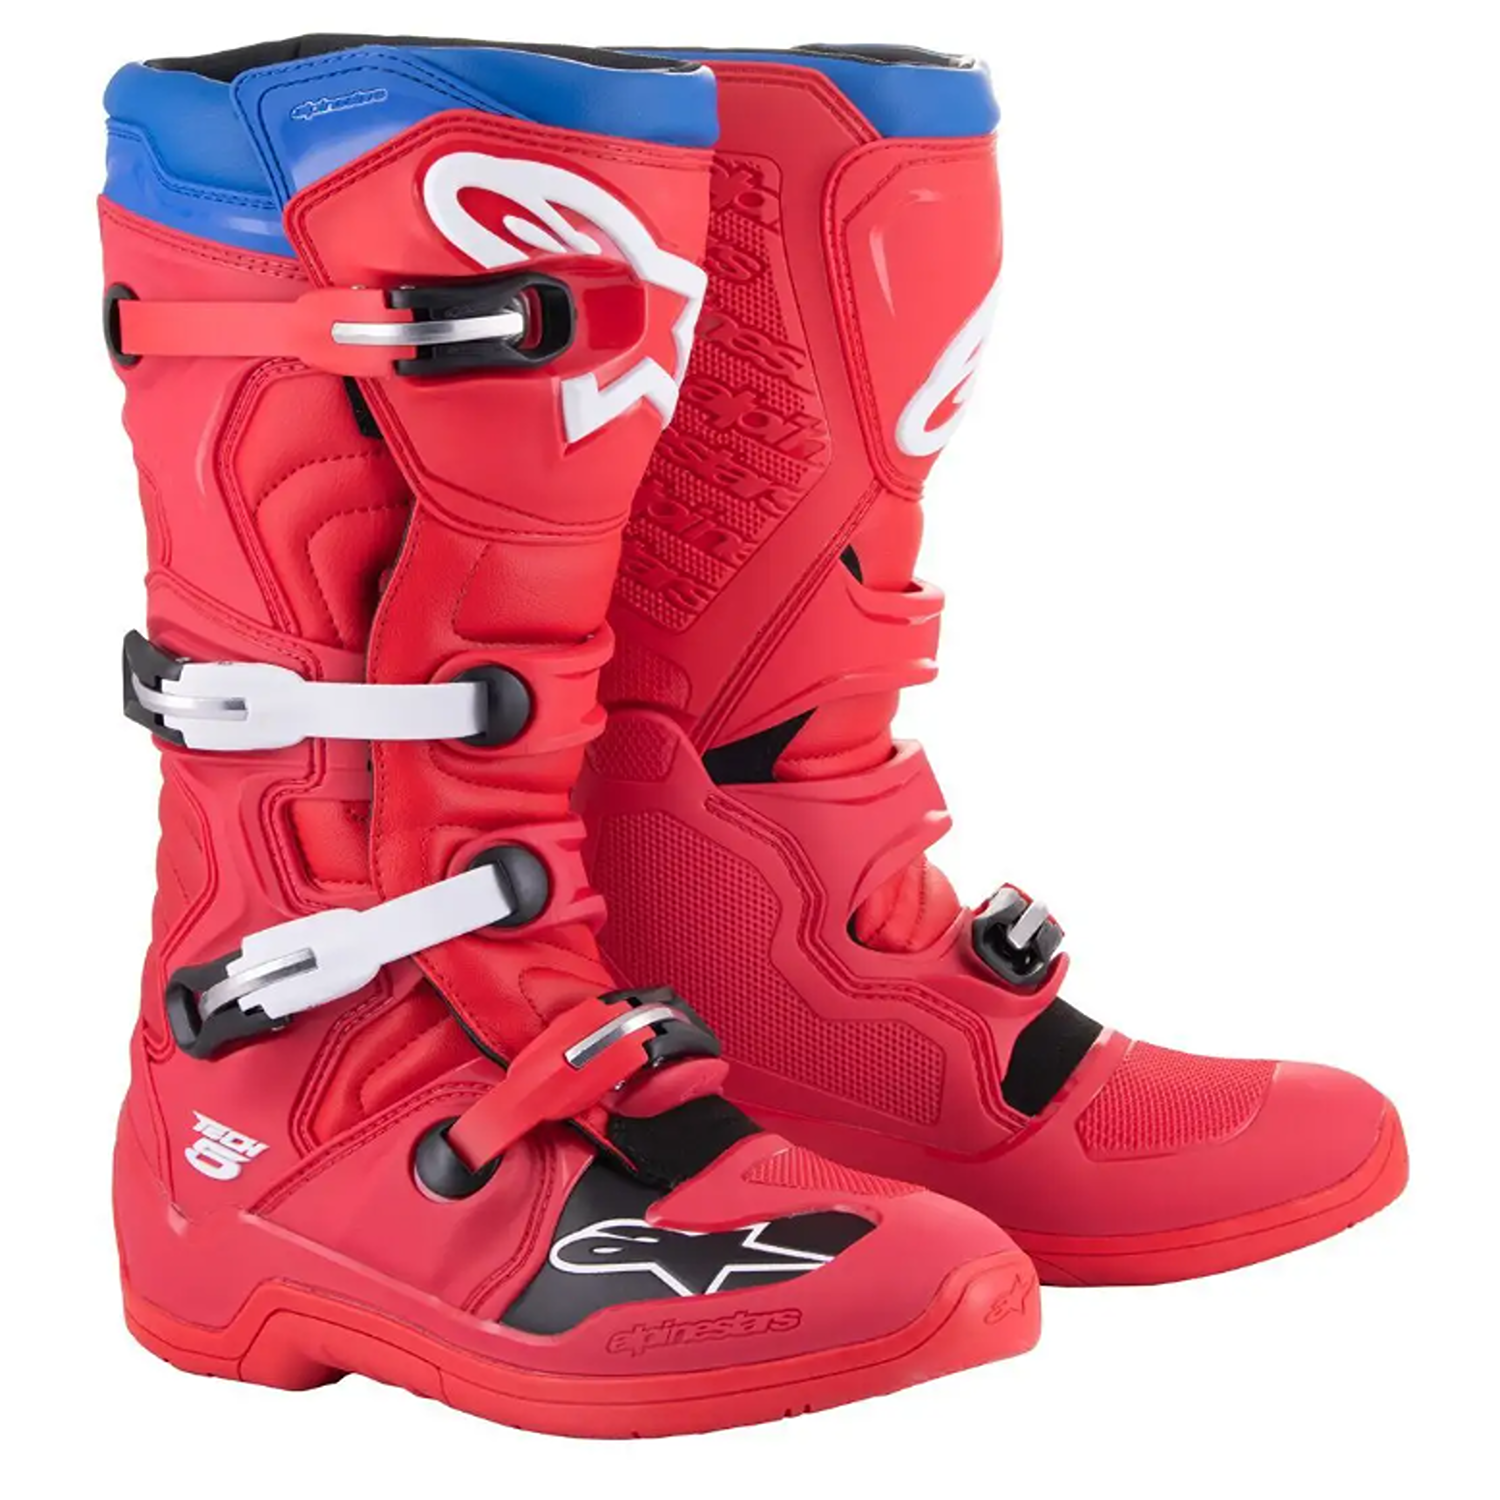 Image of Alpinestars Tech 5 Boots Bright Red Dark Red Blue Größe US 15